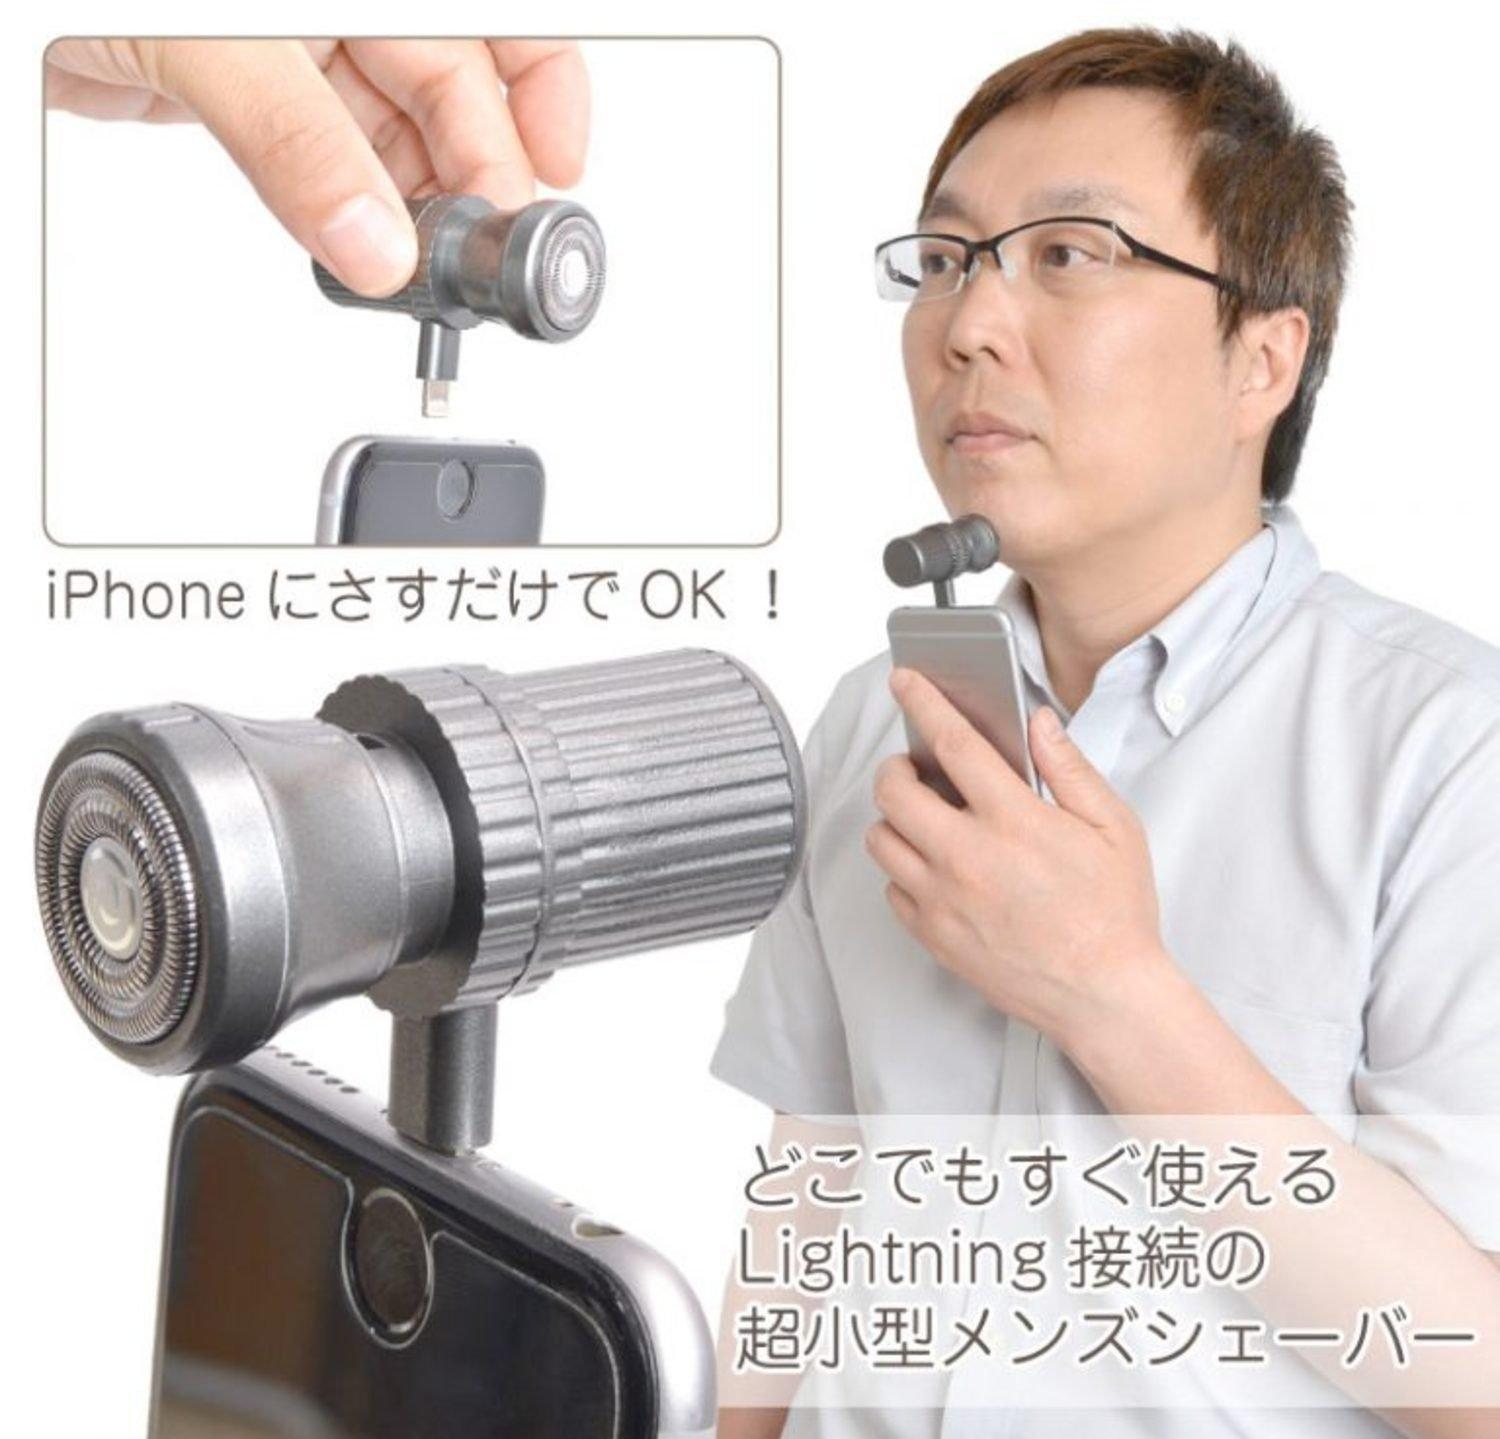 Японцы теперь бреются с помощью смартфона 